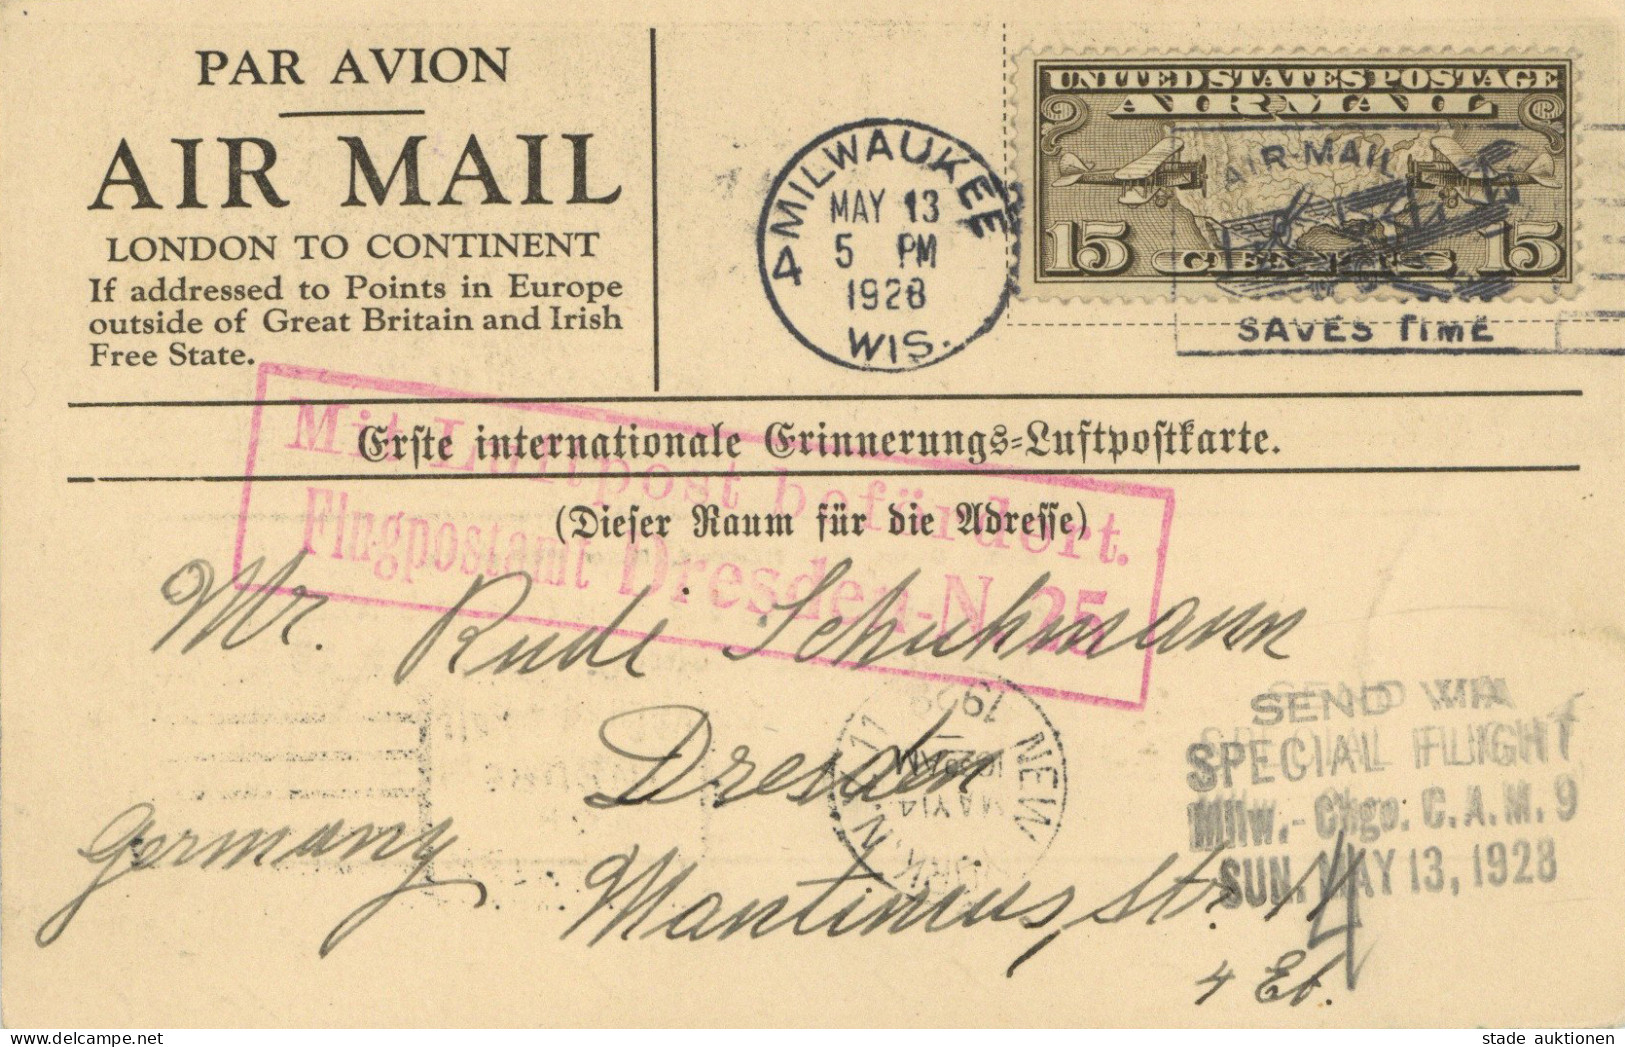 LUFTPOST Anlasskarte Hauptmann Köhl/Baron Von Hünefeld/Major Fitzmaurice Empfang Der Bremen-Flieger In Milwaukee 1928 I- - Dirigibili